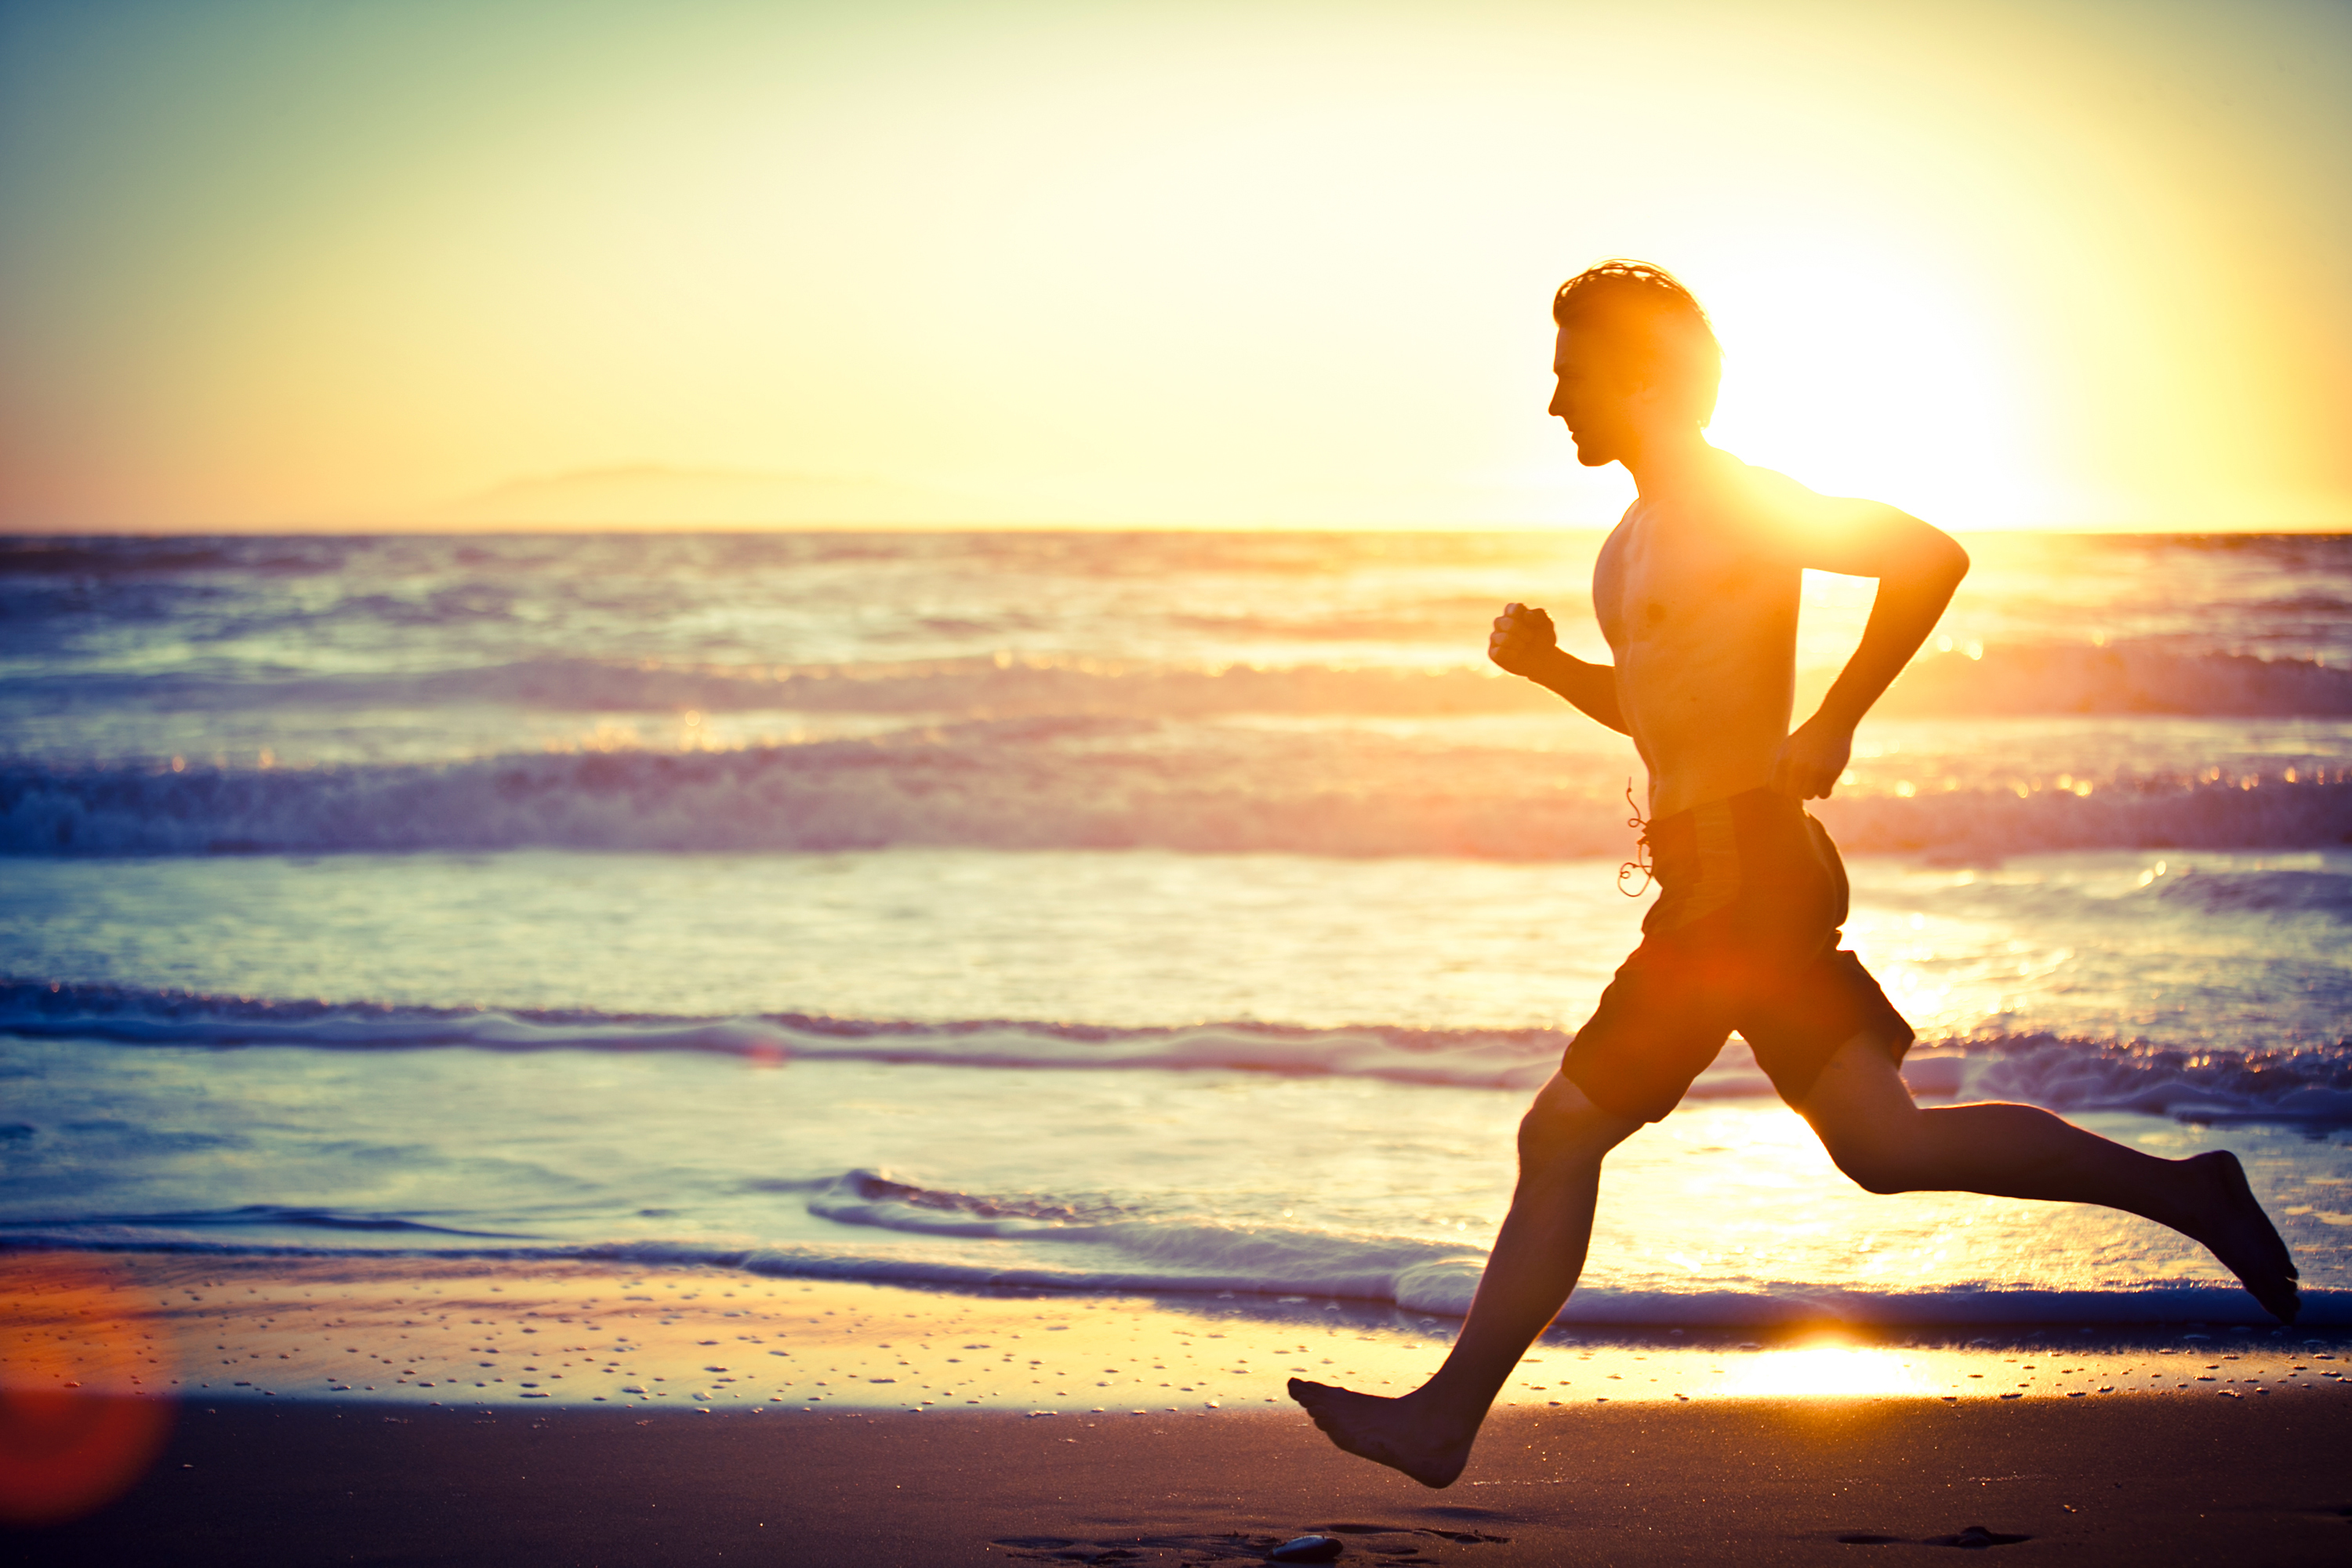 Is het waar dat ijverig hardlopen het lichaam groter maakt?